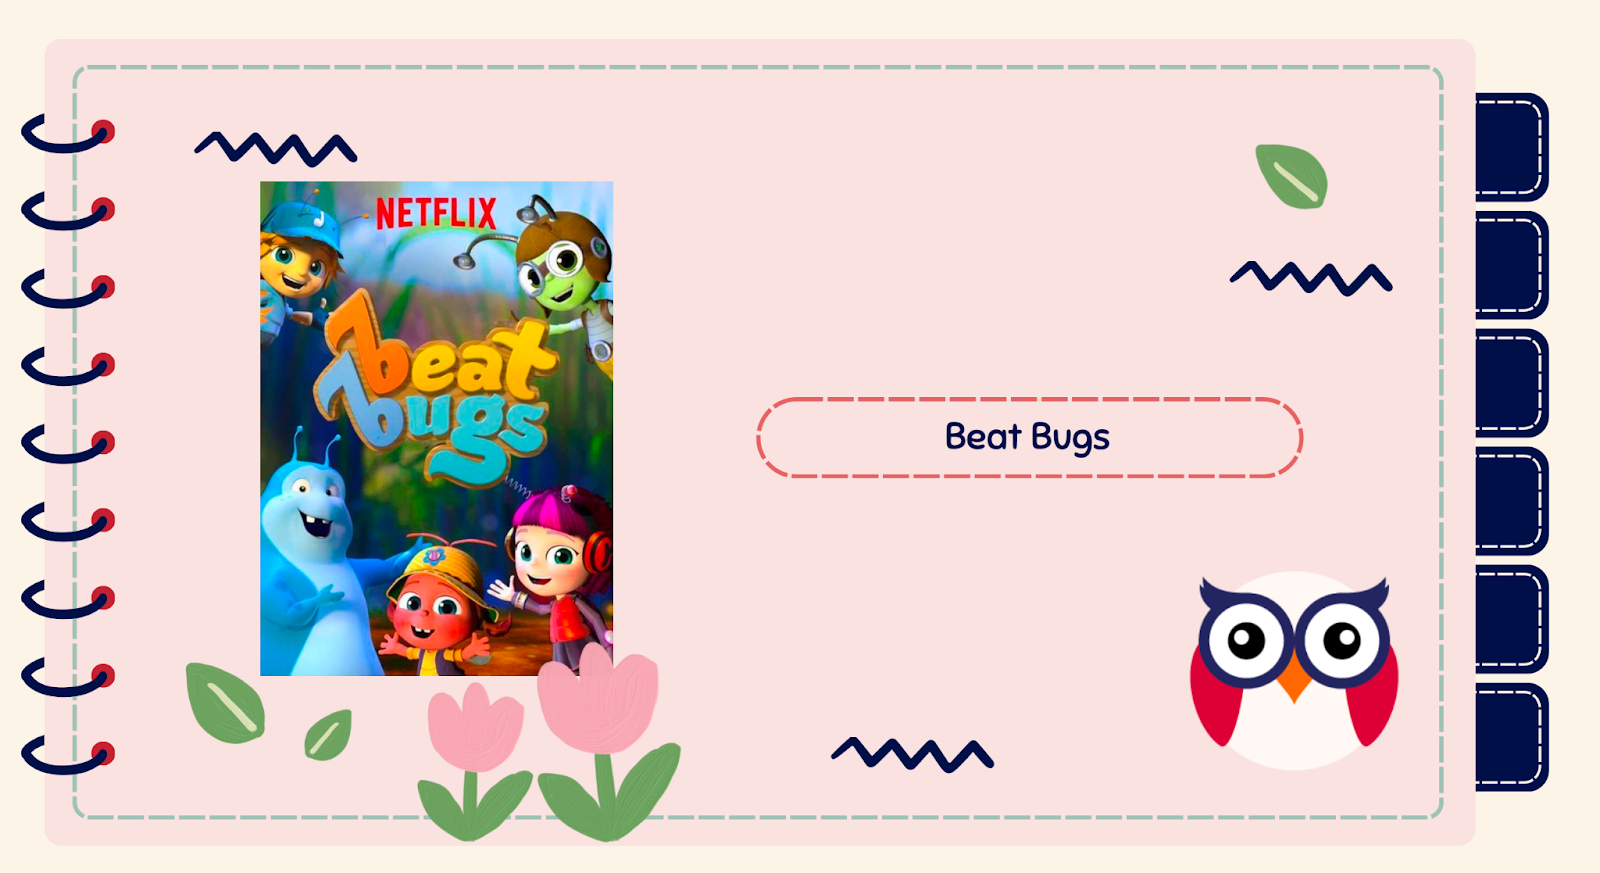 Beat Bugs nổi bật với những thông điệp ý nghĩa về tình bạn và tinh thần đồng đội trong cuộc sống